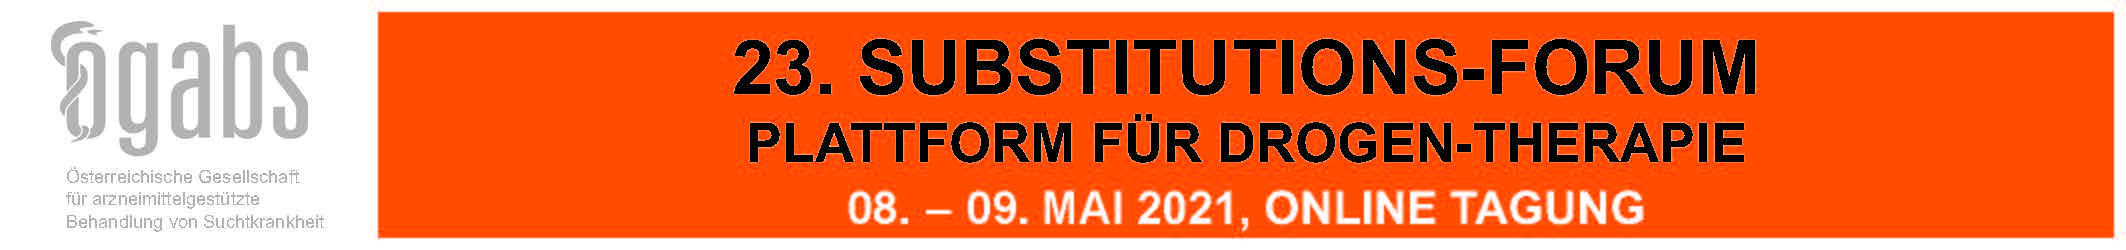 23. Substitutions-Forum – Plattform für Drogentherapie (Online Tagung)